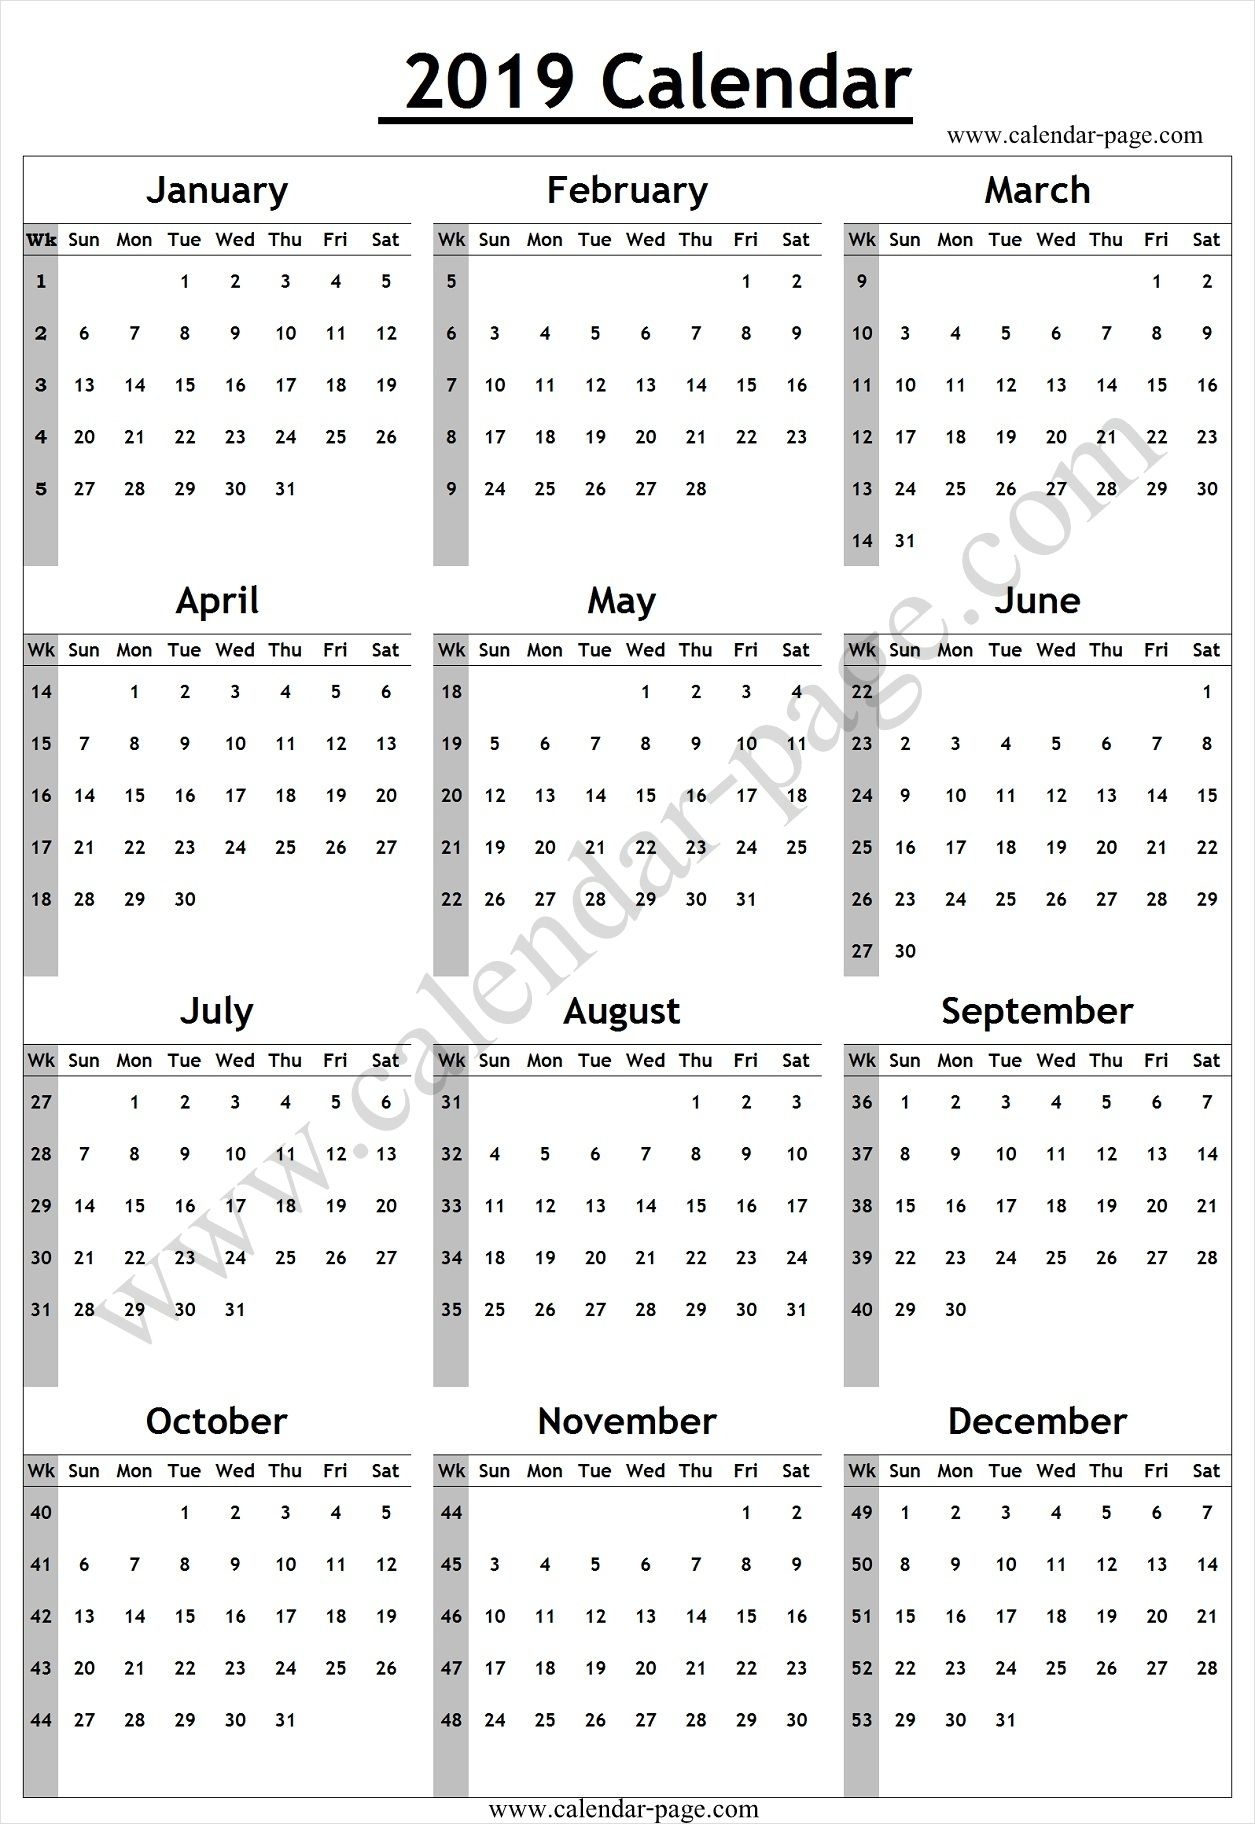 Calendar 2019 With Week Numbers | Week Number, Calendar 2019